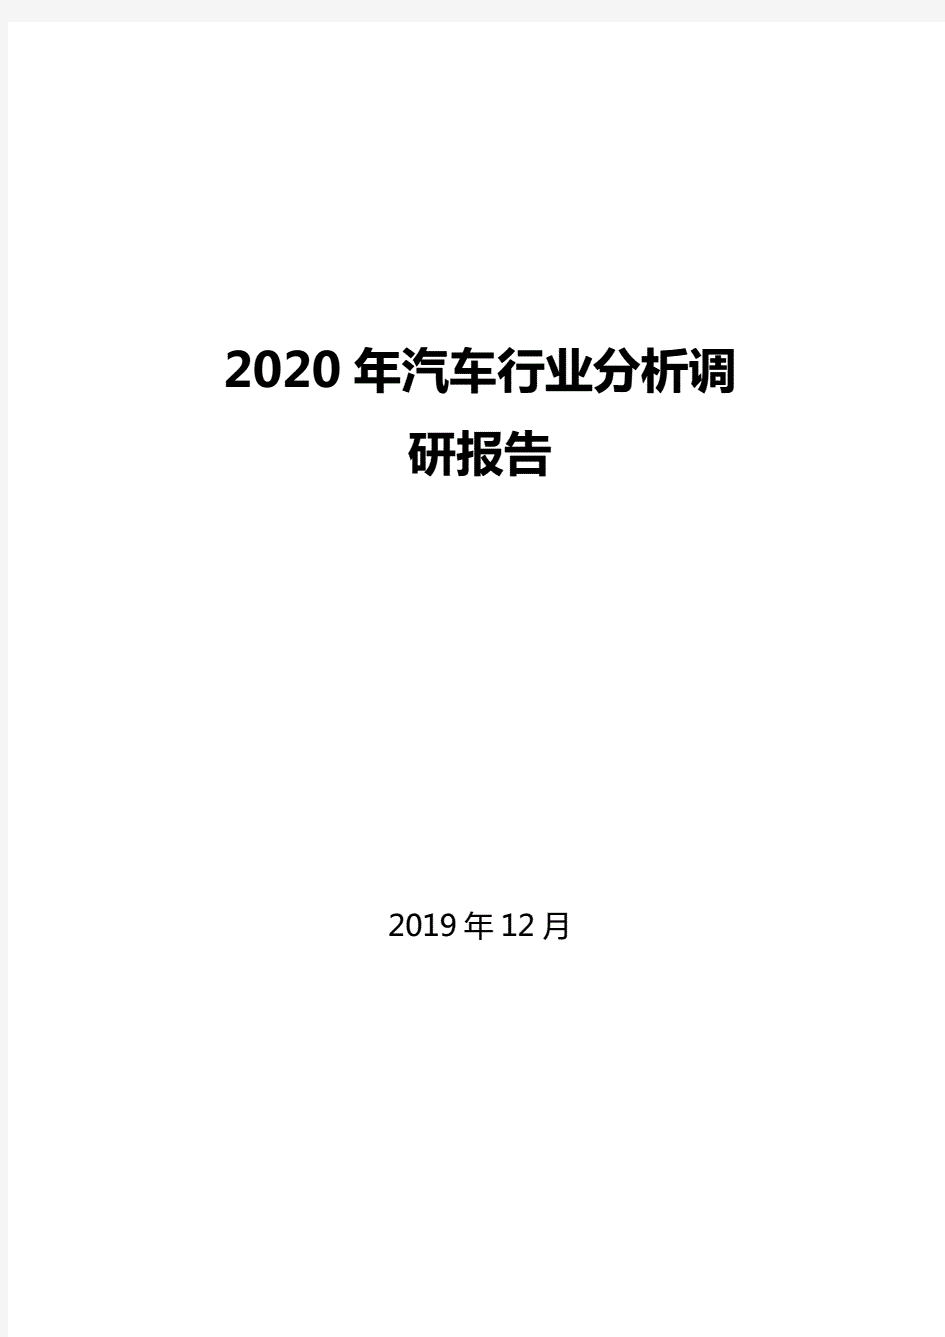 2020年汽车行业市场调研分析报告.